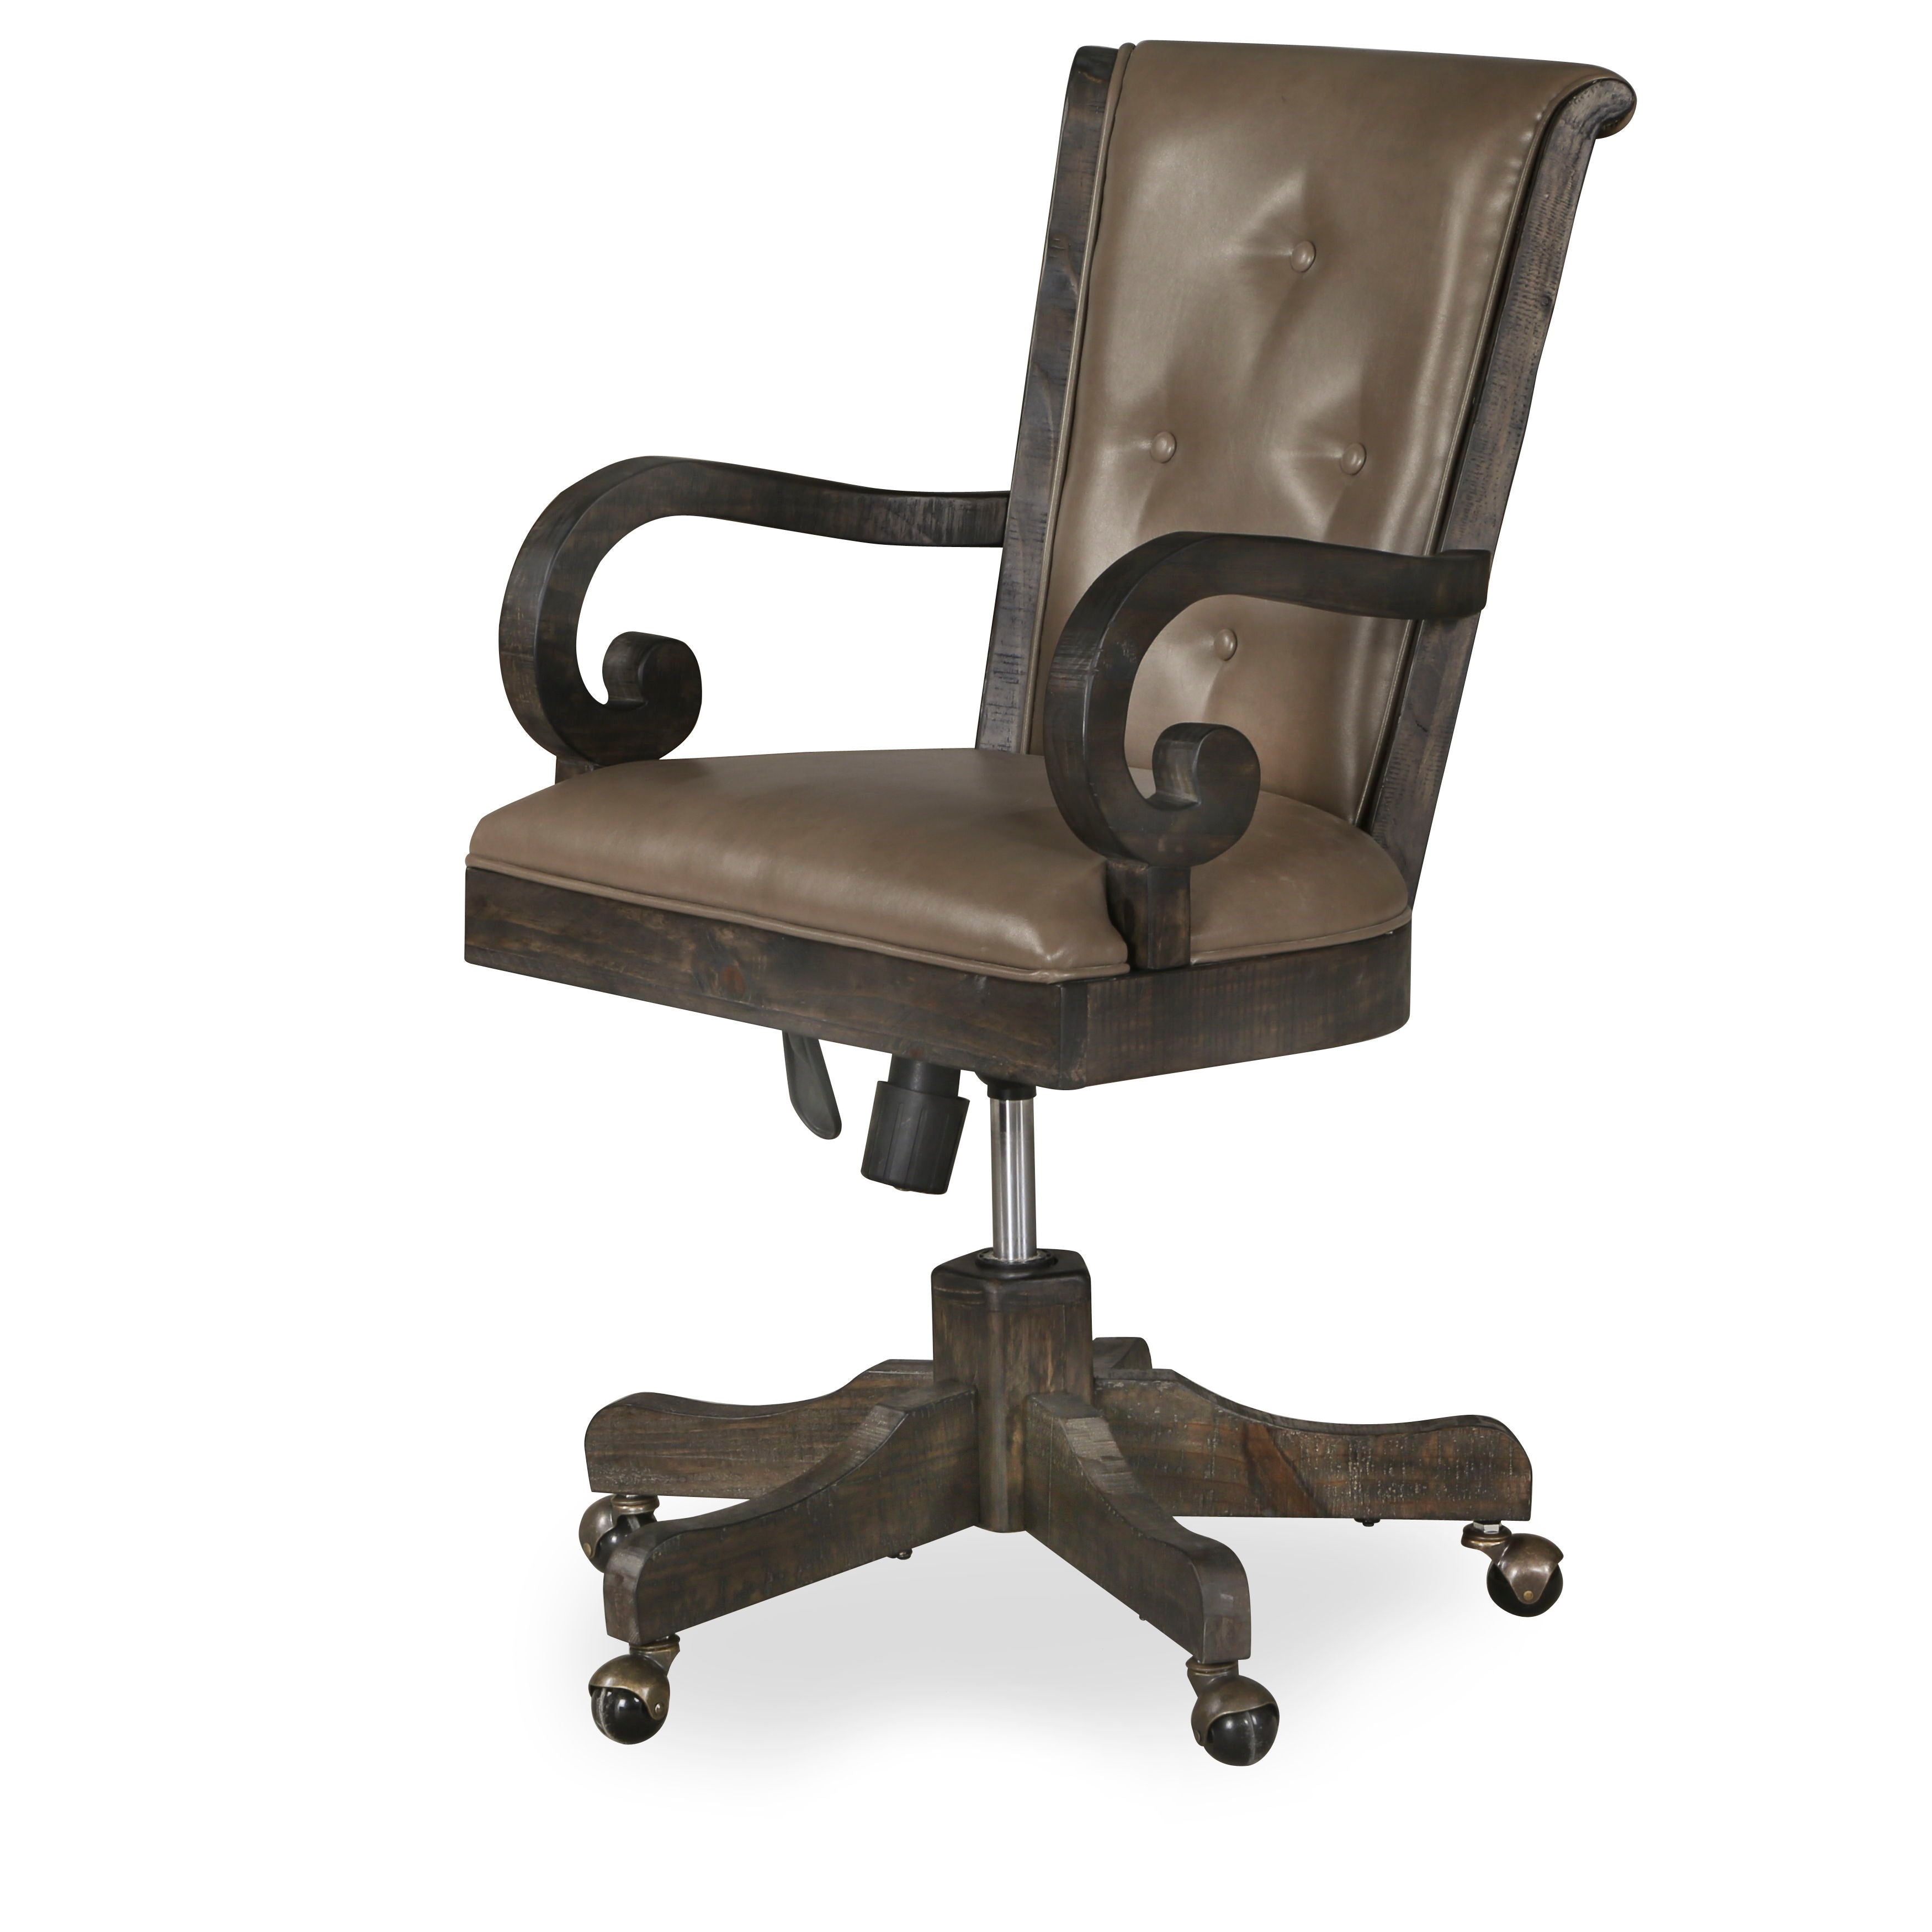 Bellamy - Fully Upholstered Desk Chair - Peppercorn